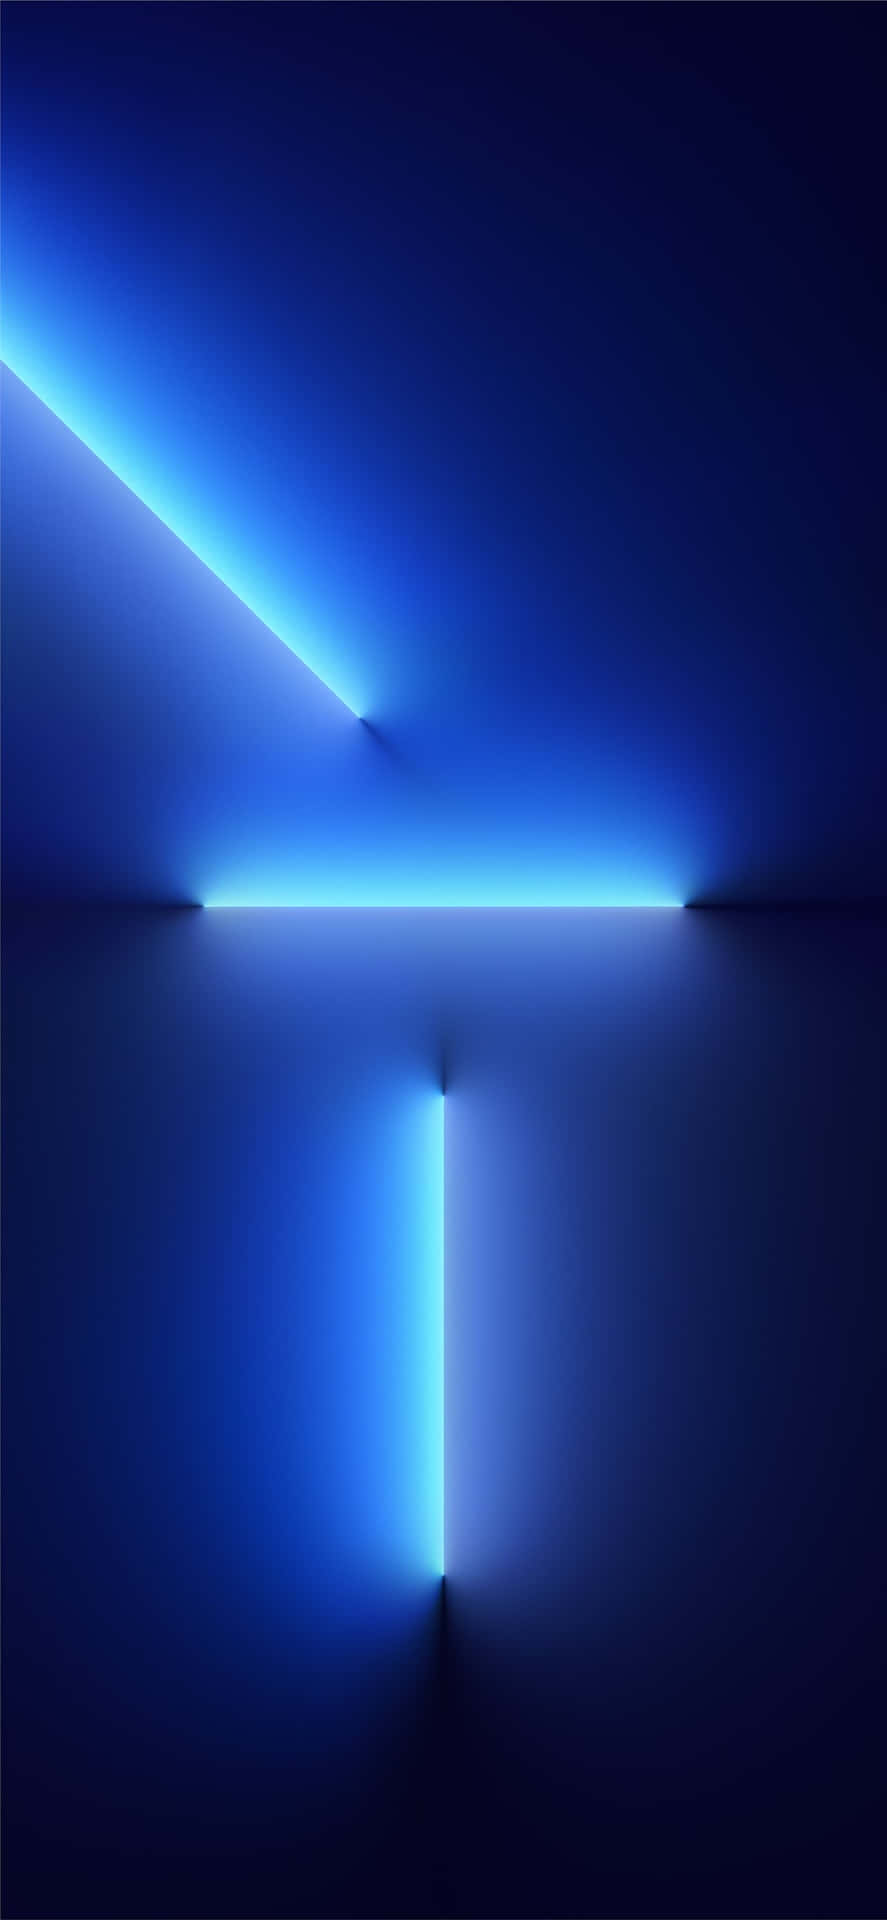 IPhones XS Max Blue Wall Lights Wallpaper